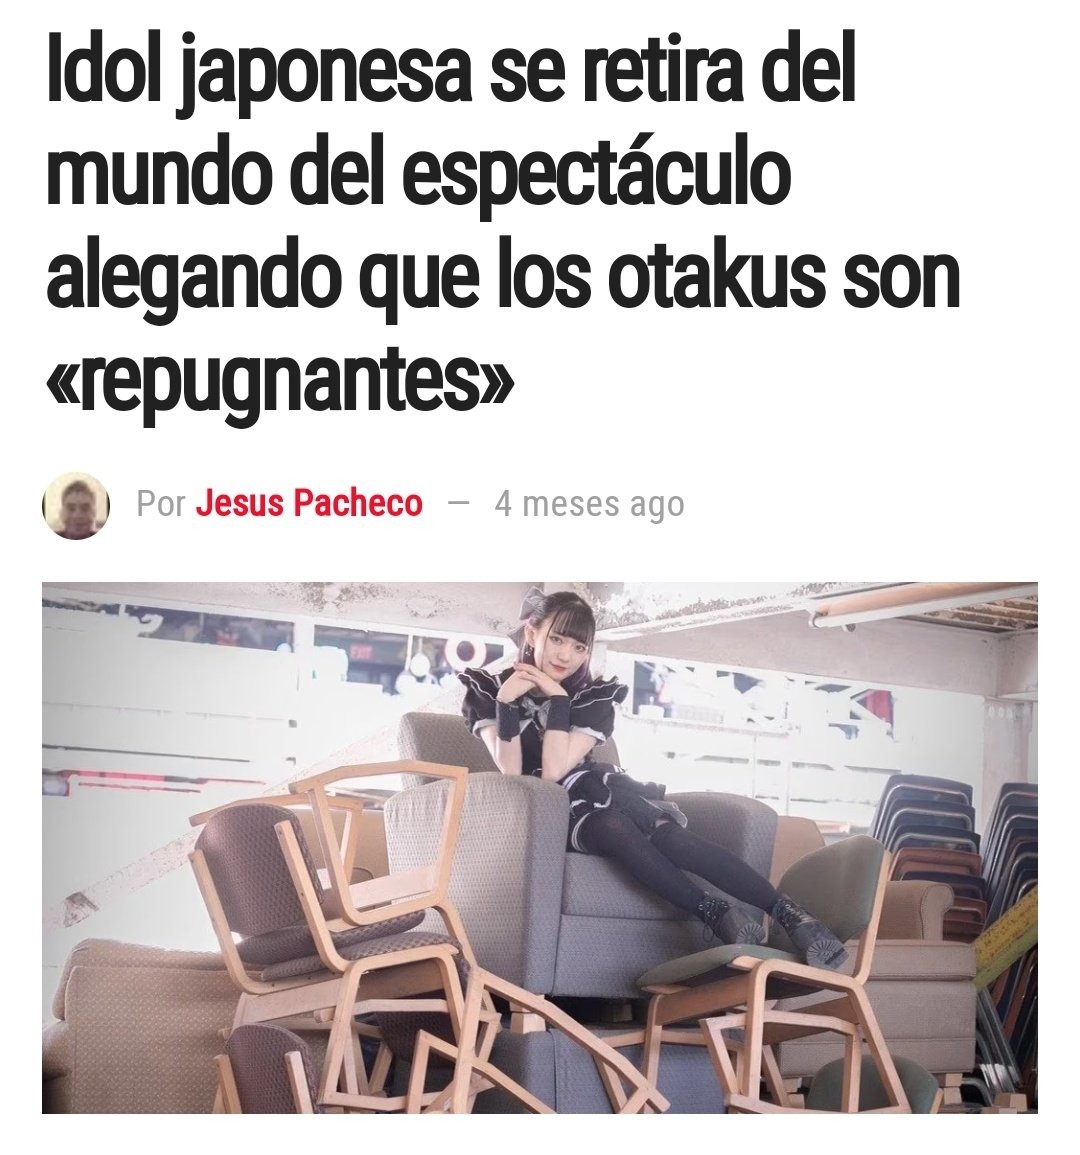 Si crees que los otakus latinos son asquerosos, los japoneses son inmundicia - meme